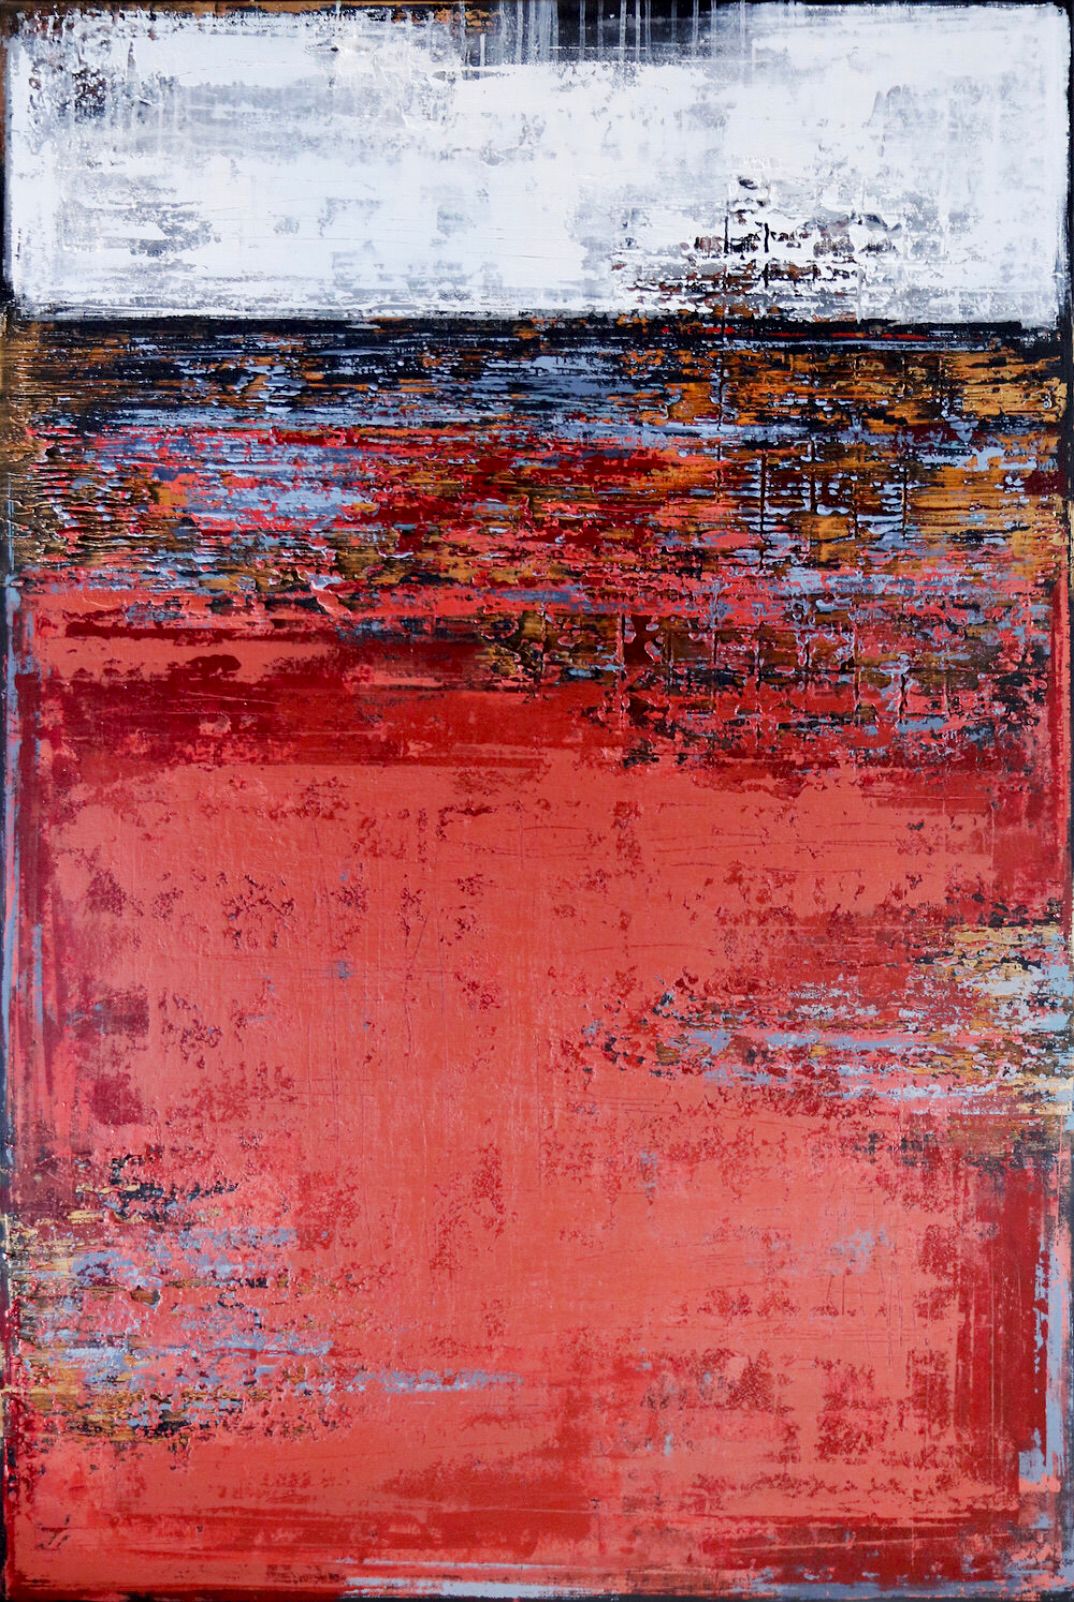 In Inez Froehlich's "FADED RED" abstraktes Gemälde dominieren die Farben, ziegelrot, weiß, schwarz, blau, Gold. Der Stil des Gemäldes ist Shabby chic, Industriestil, Vintage, Retro, Boho, rustikal.